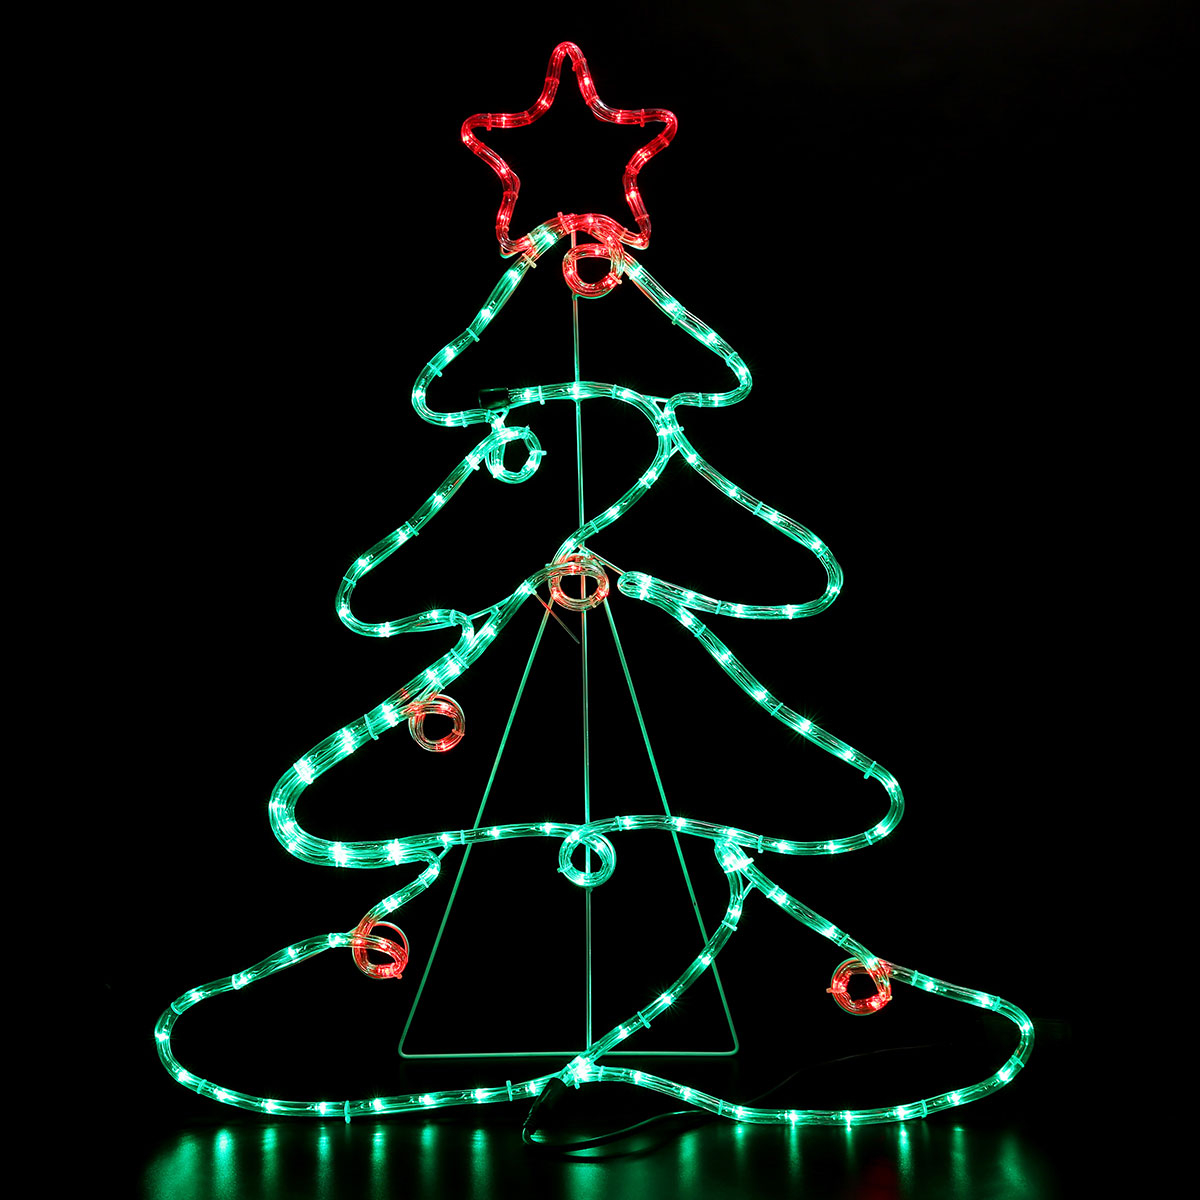 Χριστουγεννιάτικο Δέντρο Φωτοσωλήνας Με 144 Led Φωτάκια & Προγράμματα (68×88) Eurolamp 600-20014